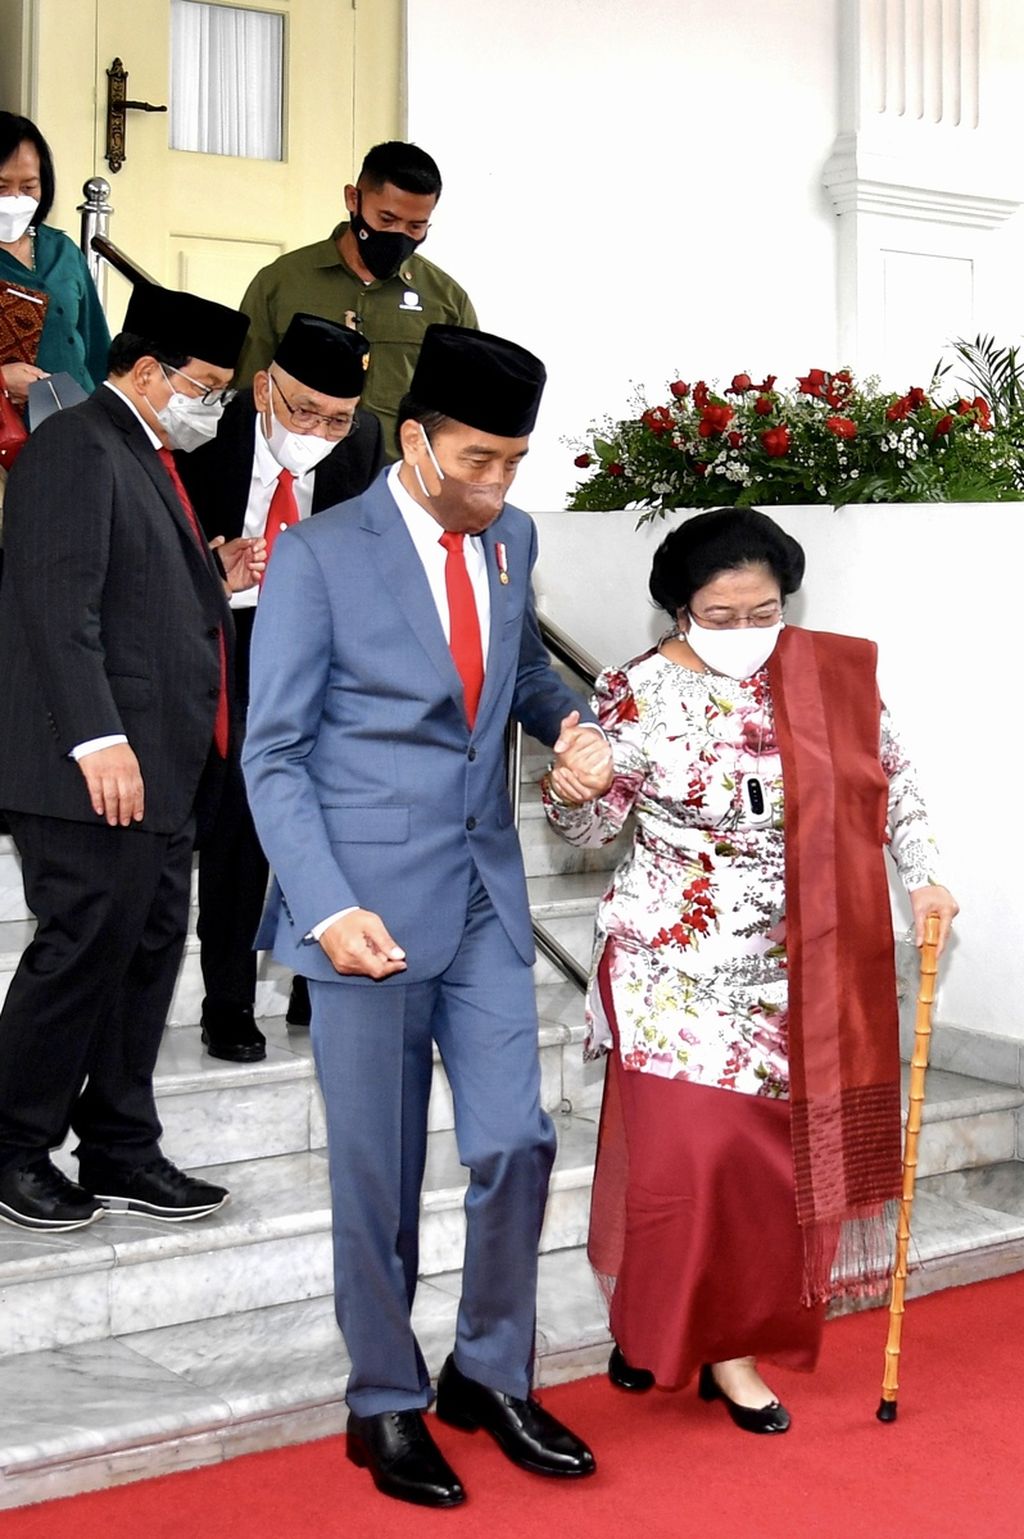 Presiden Joko Widodo menggandeng tangan Ketua Umum PDI-P Megawati Soekarnoputri saat mengantarkan ke mobilnya setelah pelantikan Megawati sebagai Ketua Dewan Pengarah Badan Pembinaan Ideologi Pancasila 2022-2027, di Istana Negara, Jakarta, Selasa (7/6/2022). Selain Megawati dilantik pula anggota Dewan Pengarah BPIP lainnya, juga Kepala dan Wakil Kepala BPIP.